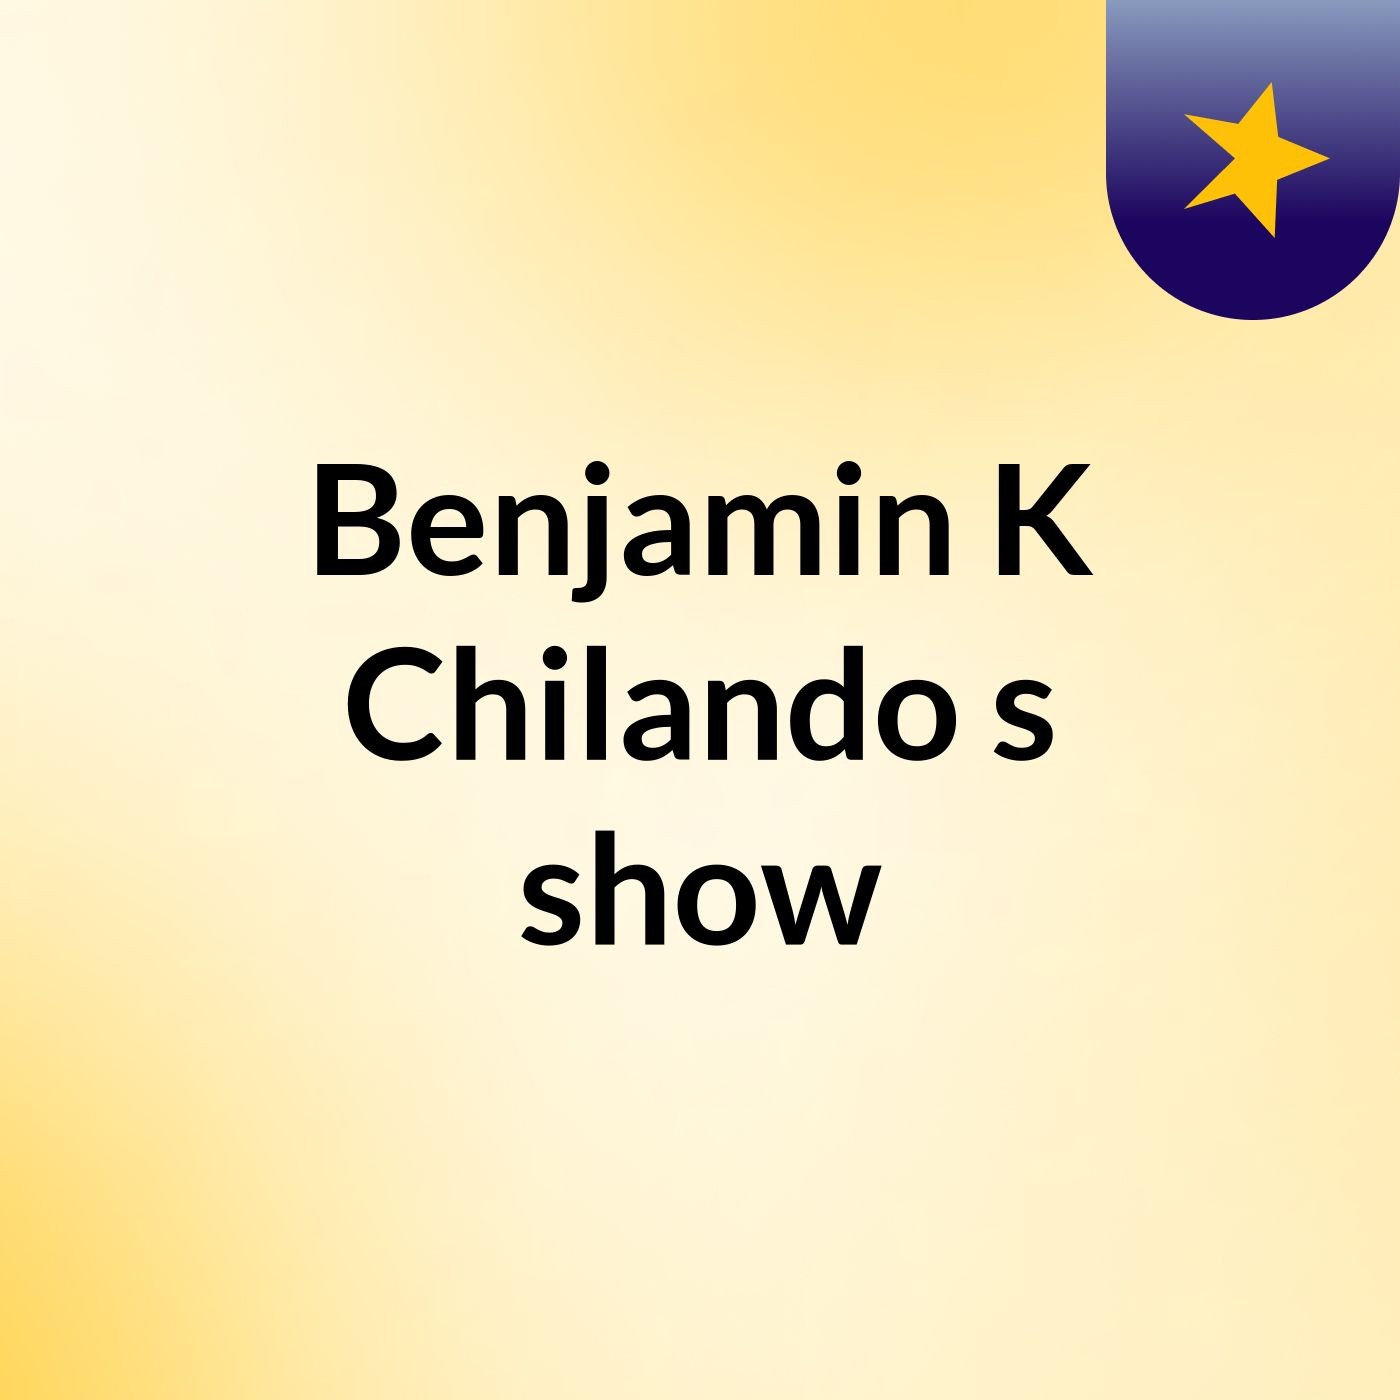 Benjamin K Chilando's show